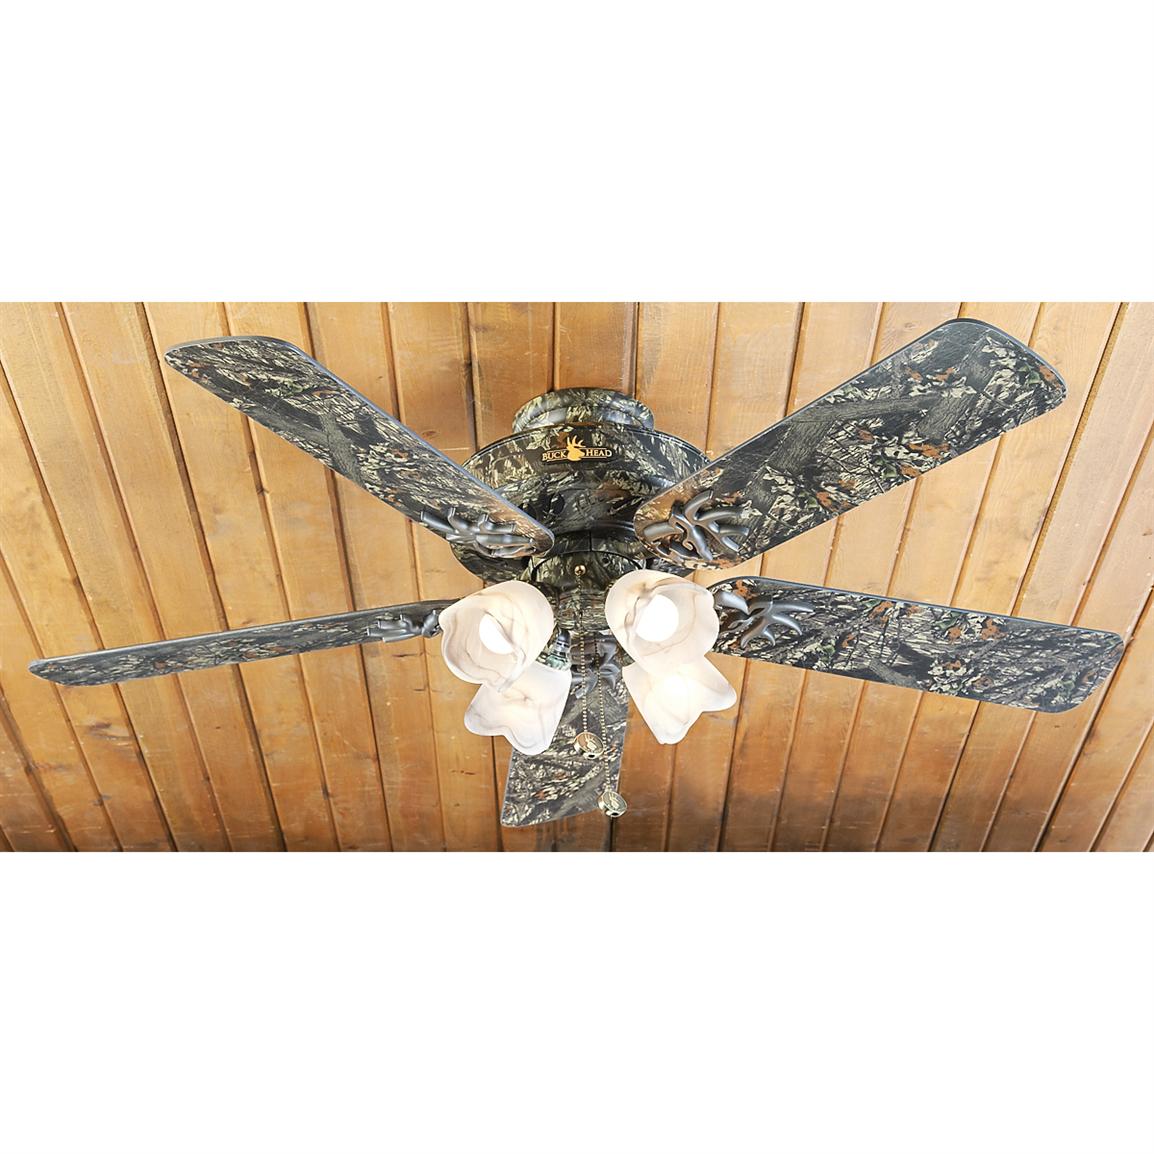 mossy oak ceiling fan photo - 6